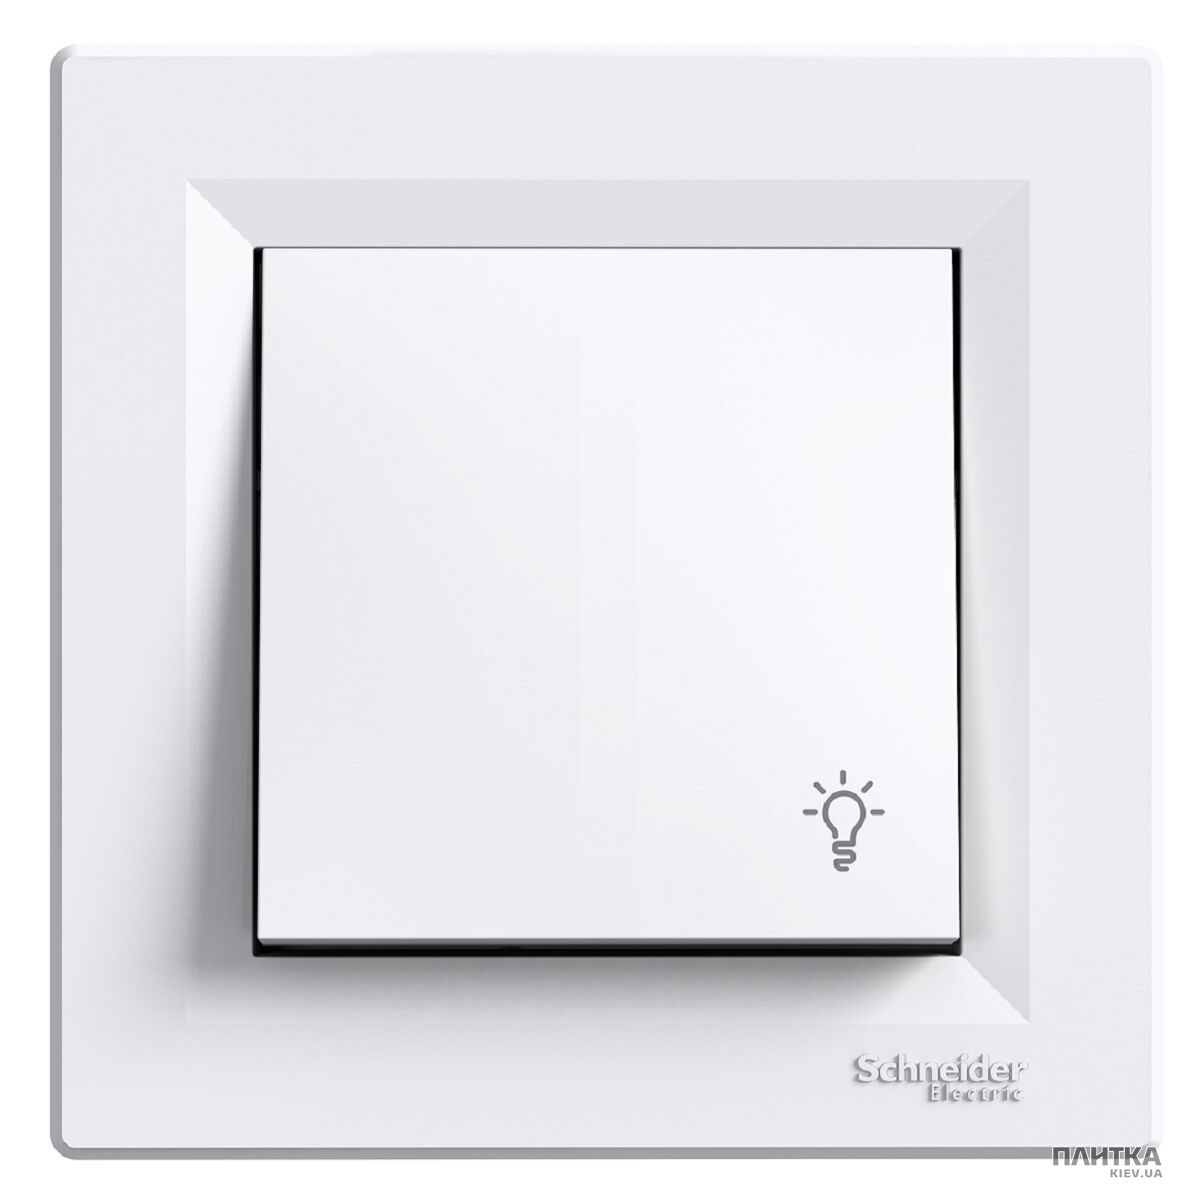 Выключатель Schneider Asfora Одноклавишный кнопочный выключатель с символом "свет", белый белый